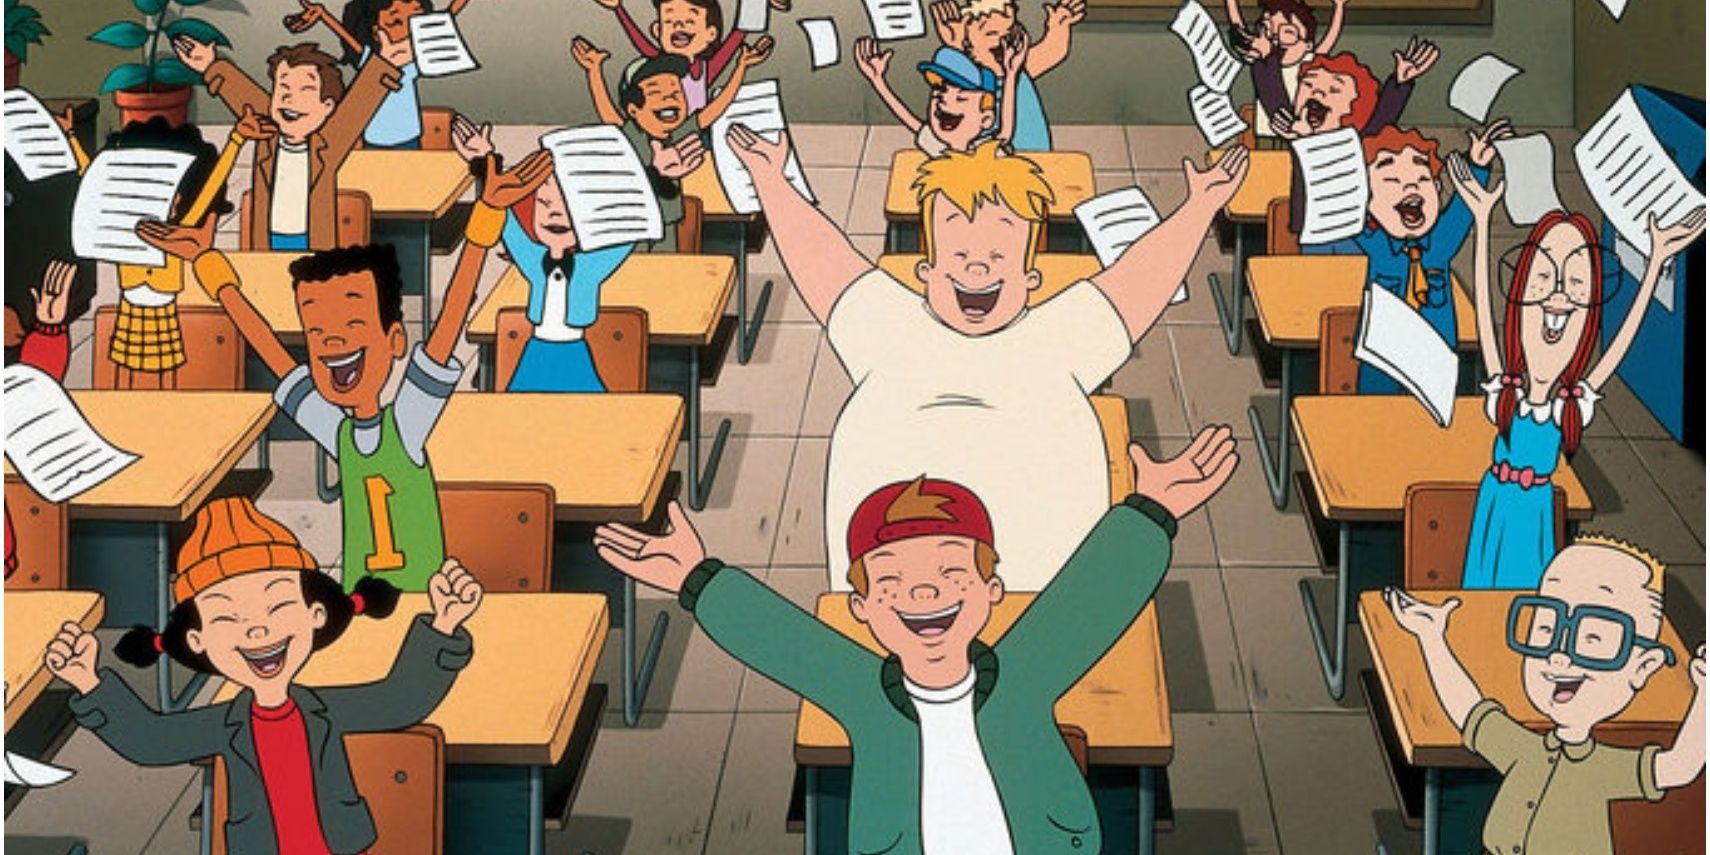 Recess characters chanting at school